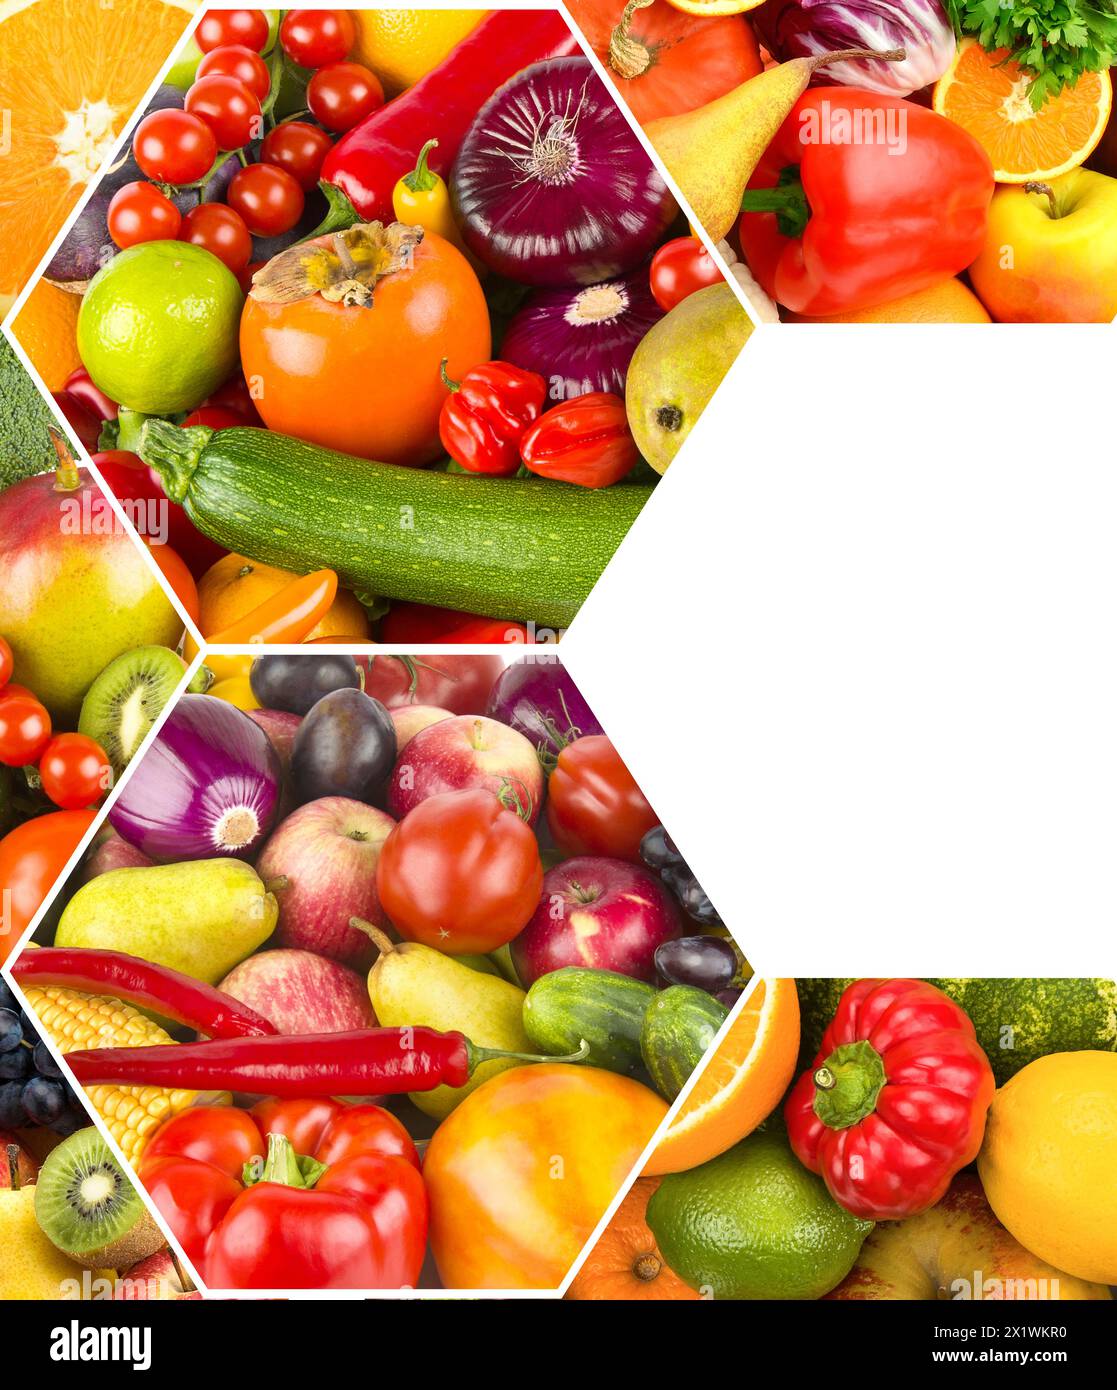 Gesunde Gemüse- und Fruchtkost - Collage. Es ist freier Platz für Text vorhanden. Stockfoto